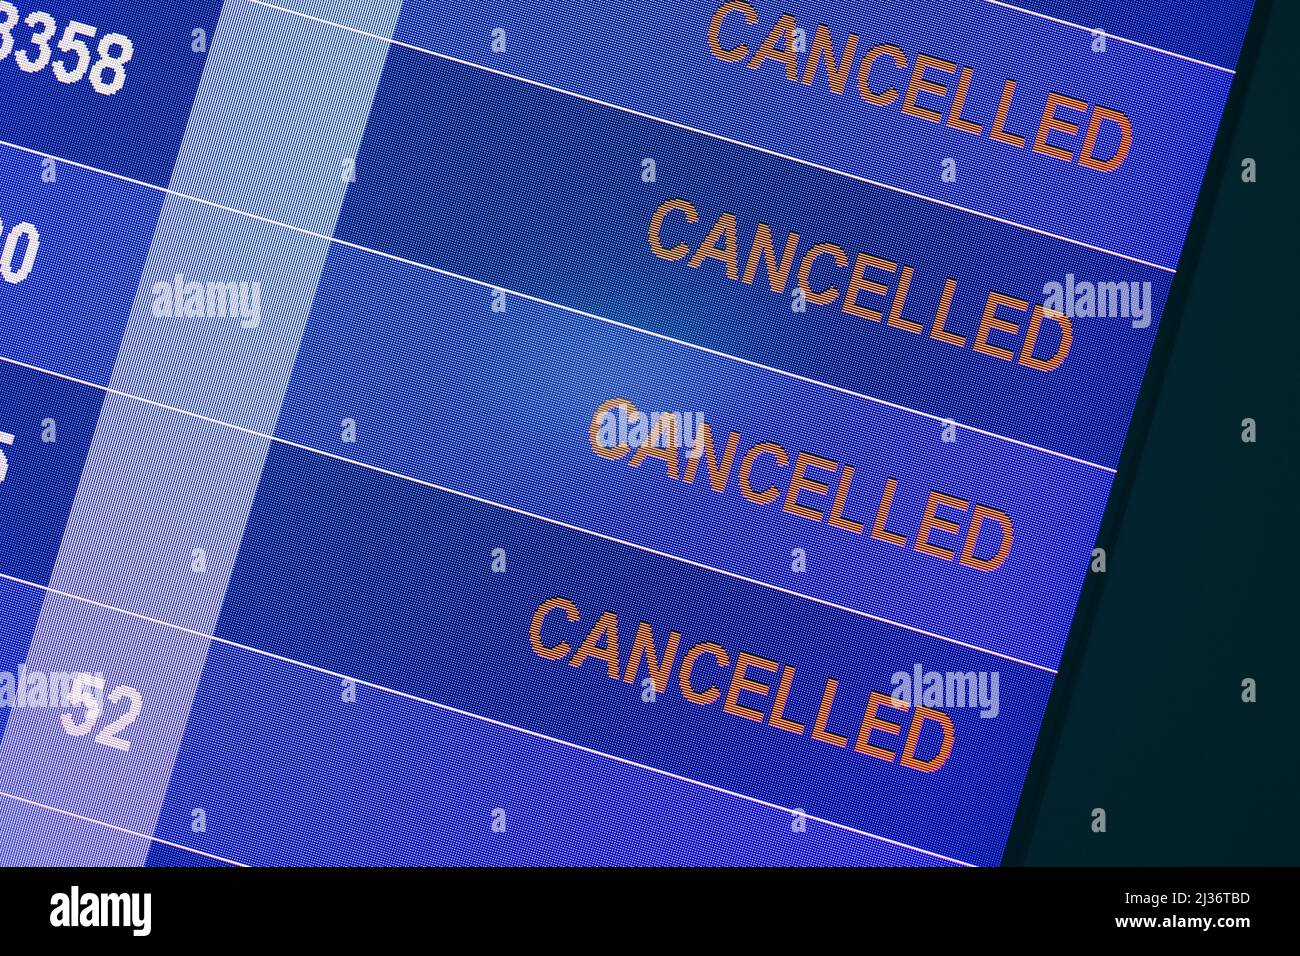 Visualización de problemas de parada de vuelo de avión en el programa de embarque del espectáculo de cancelación del vuelo. Foto de stock